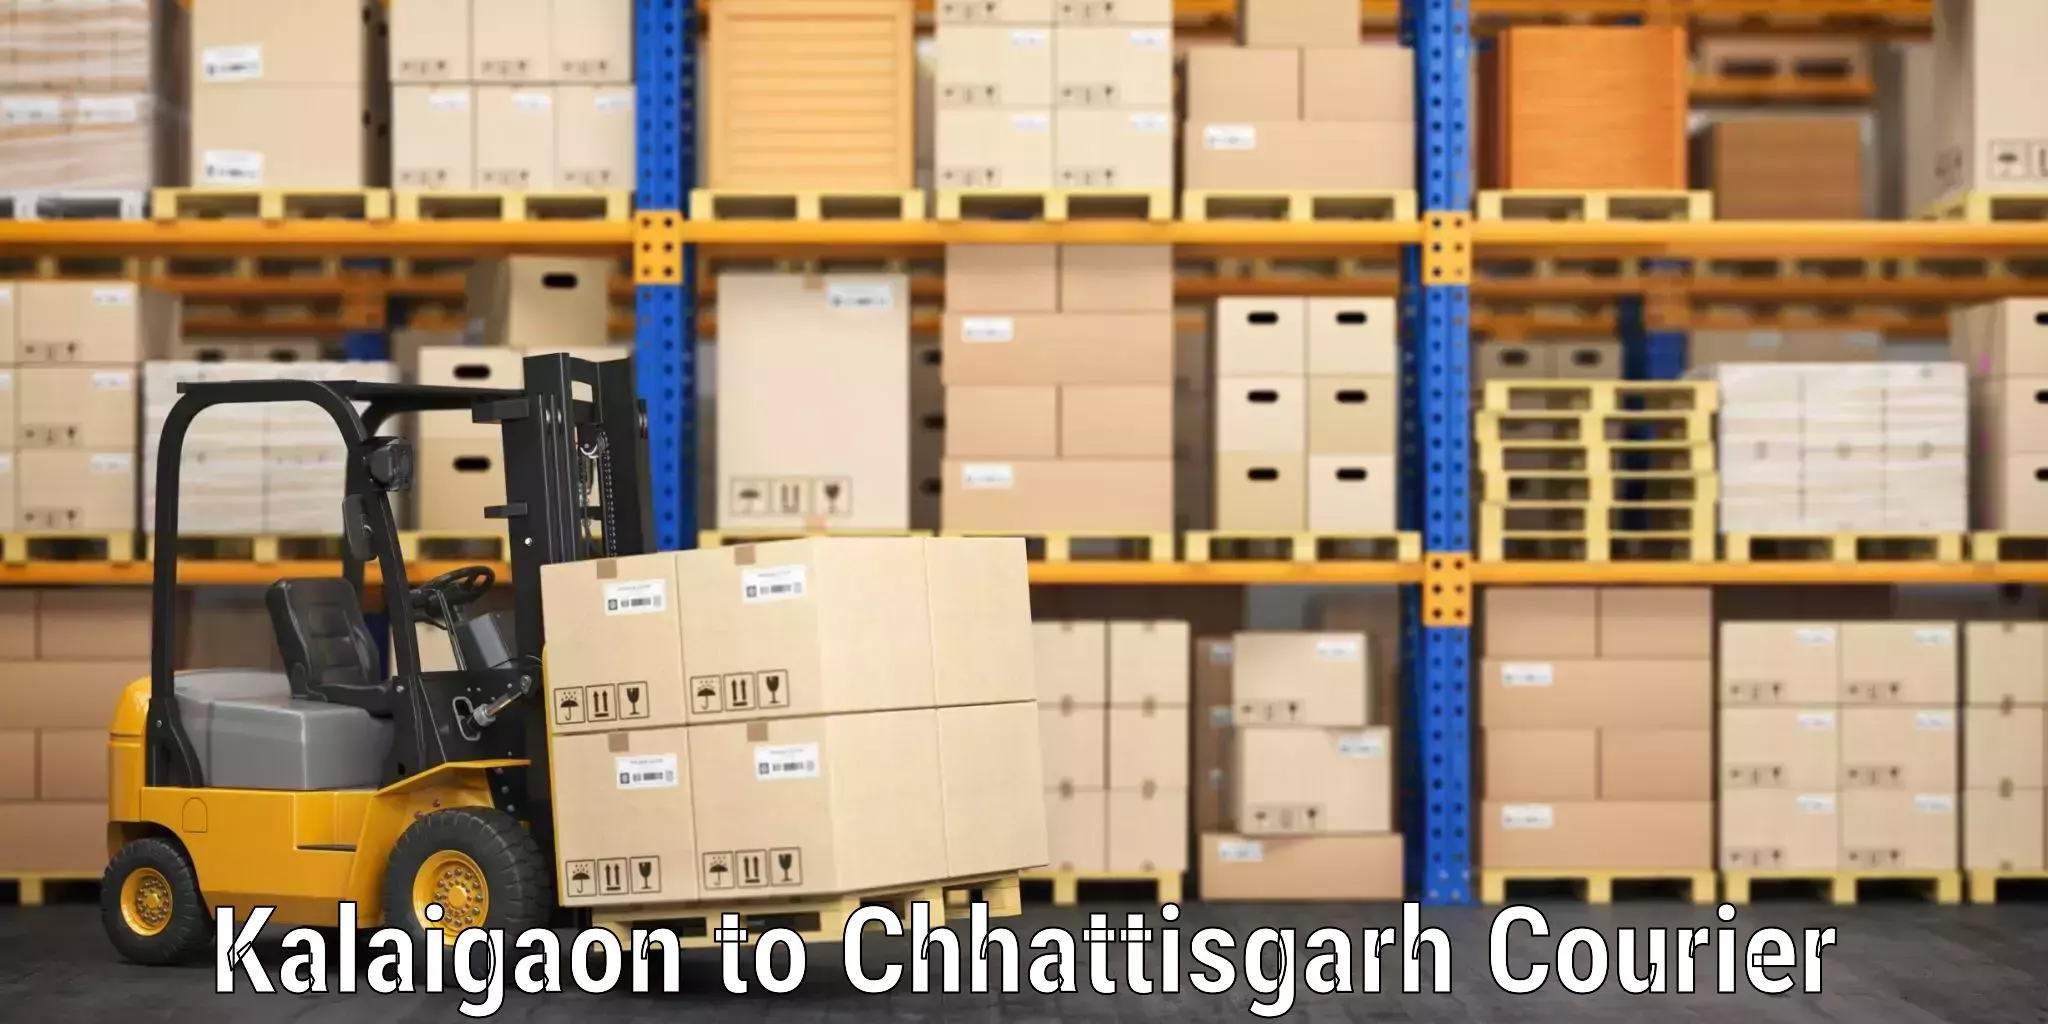 Baggage shipping rates calculator Kalaigaon to Patna Chhattisgarh